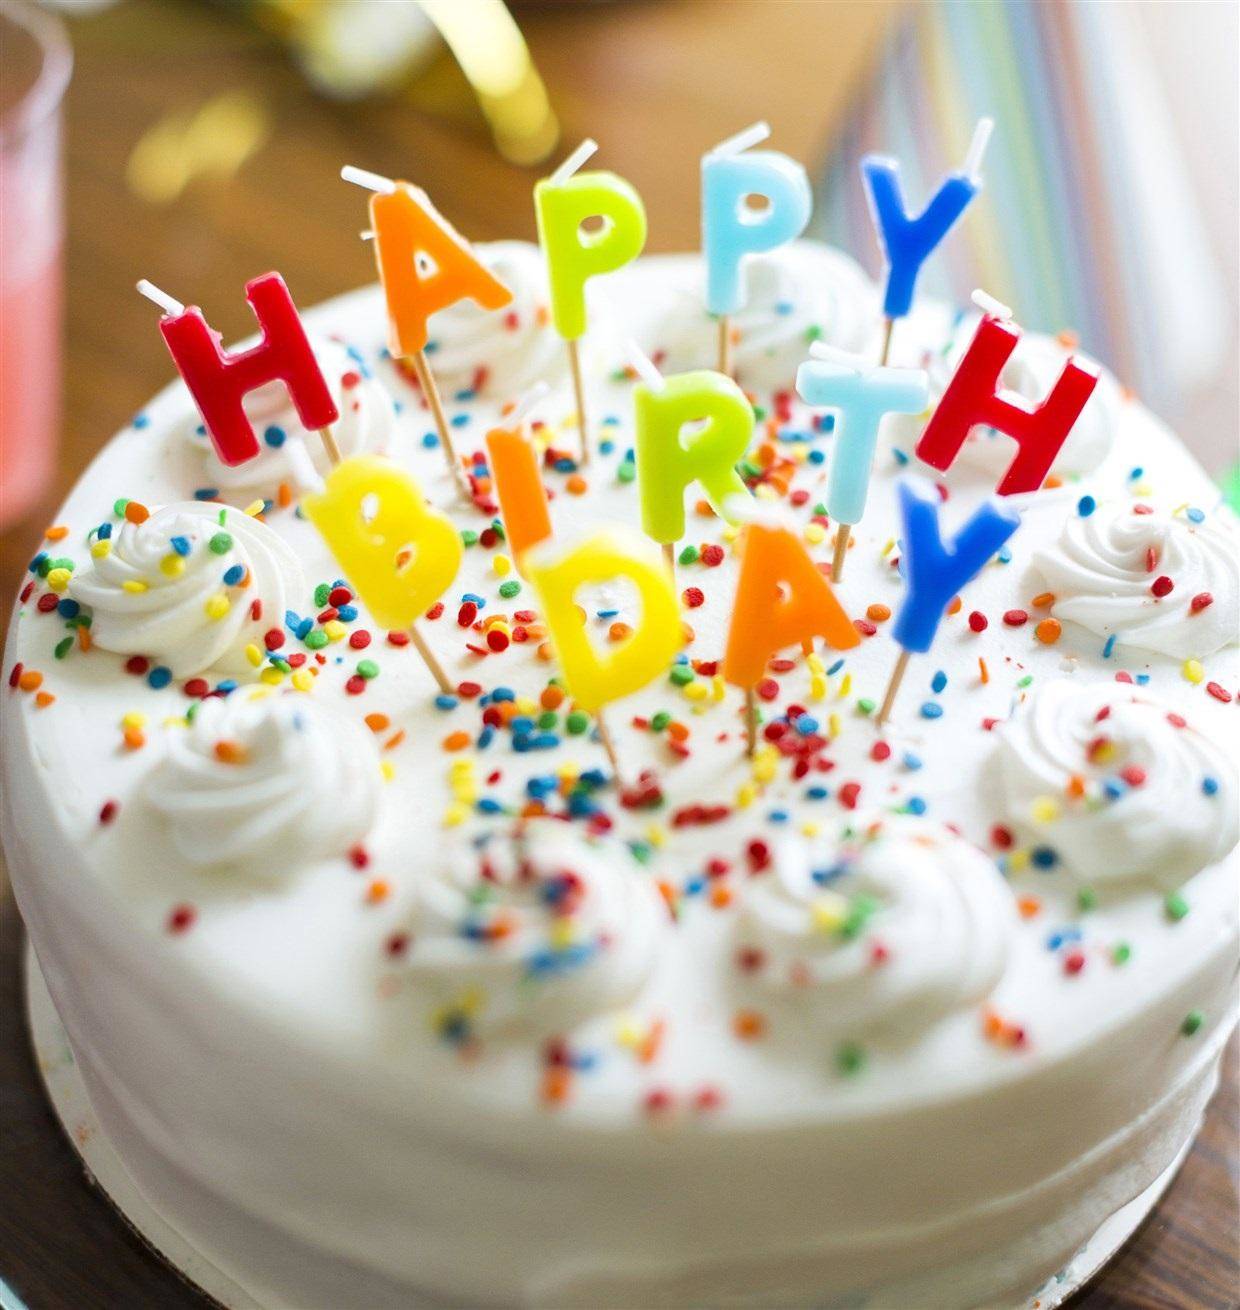 birthday special: 11 अप्रैल को जन्म लेने वाले व्यक्तियों के लिए कैसा रहेगा साल